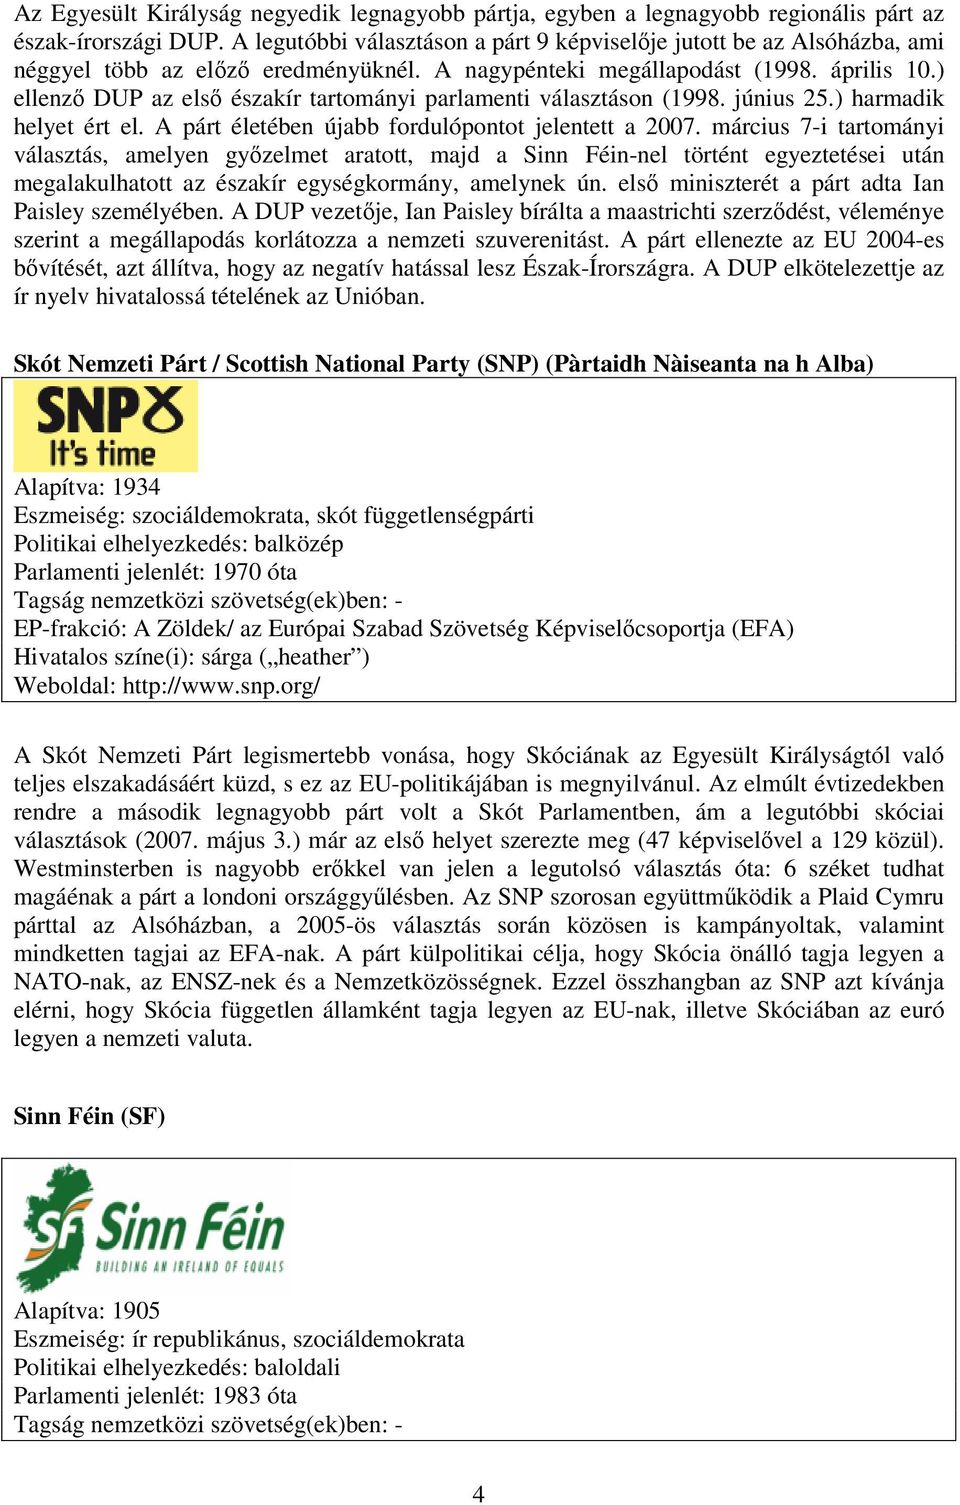 ) ellenző DUP az első északír tartományi parlamenti választáson (1998. június 25.) harmadik helyet ért el. A párt életében újabb fordulópontot jelentett a 2007.